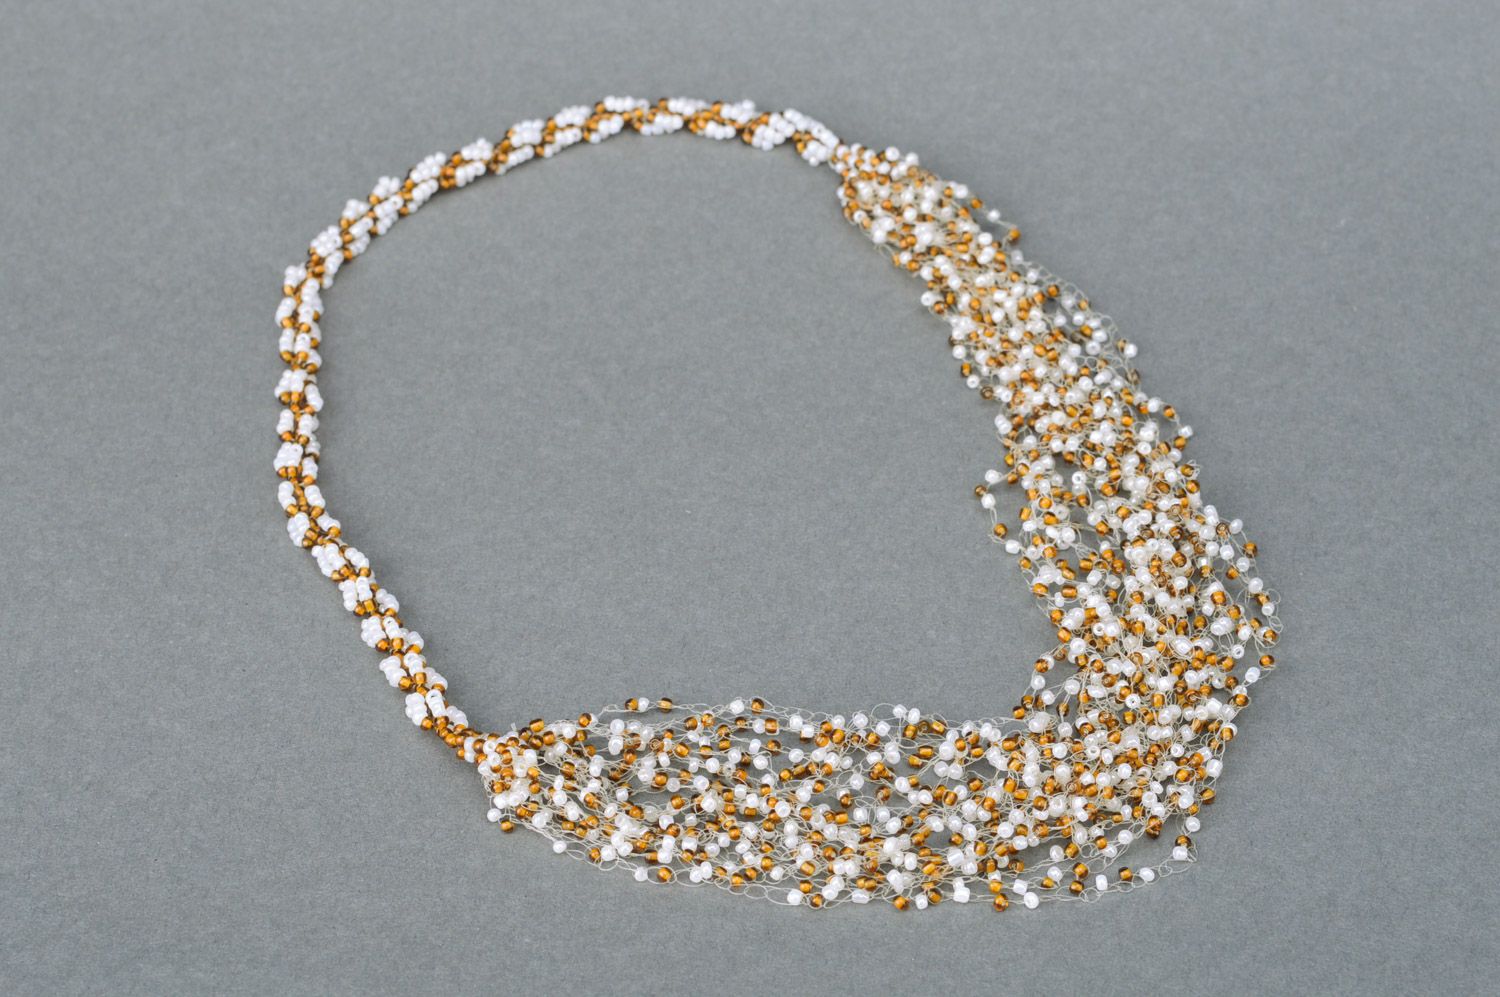 Ожерелье из чешского бисера ручной работы воздушное белое и коричневое многорядное фото 2